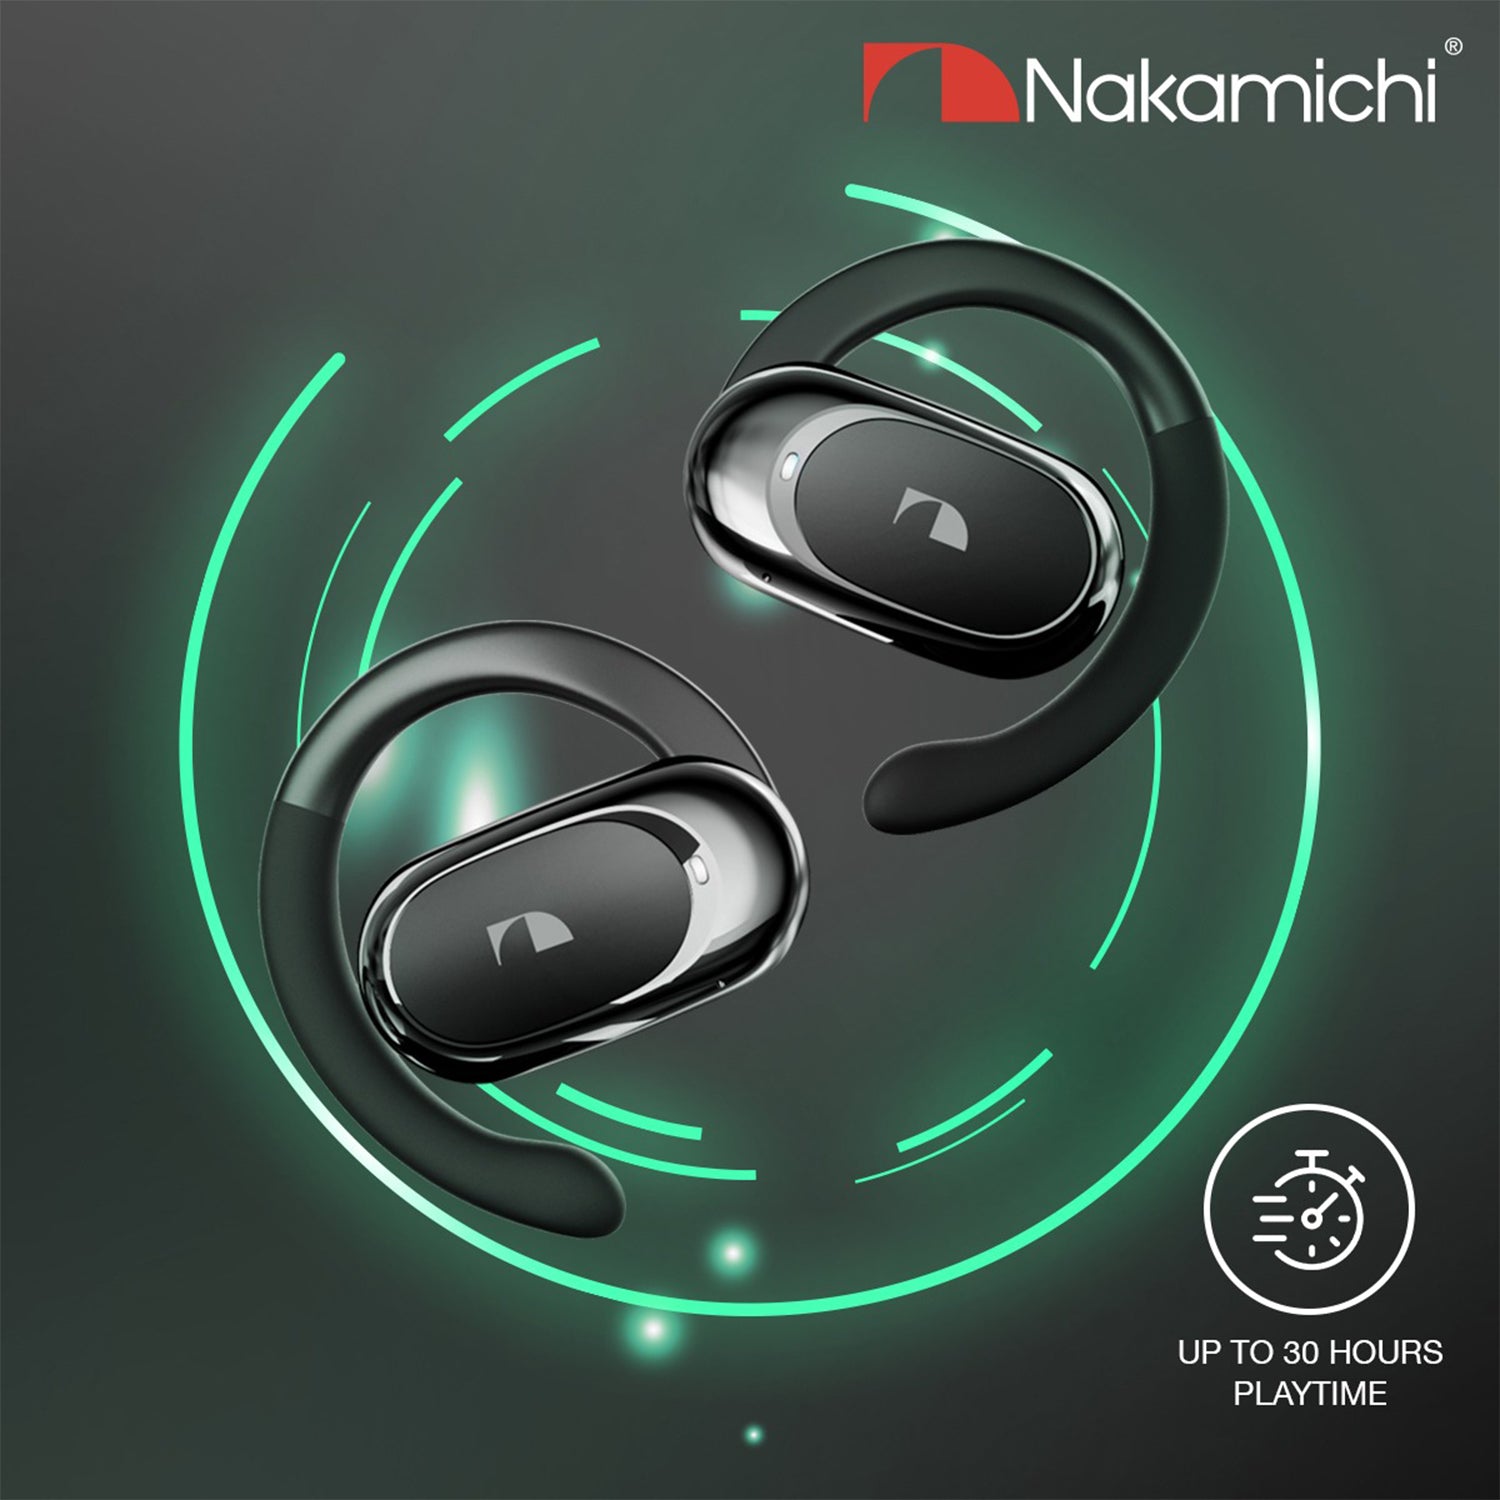 Nakamichi OP-TW005 Open-Ear True Wireless Earphones